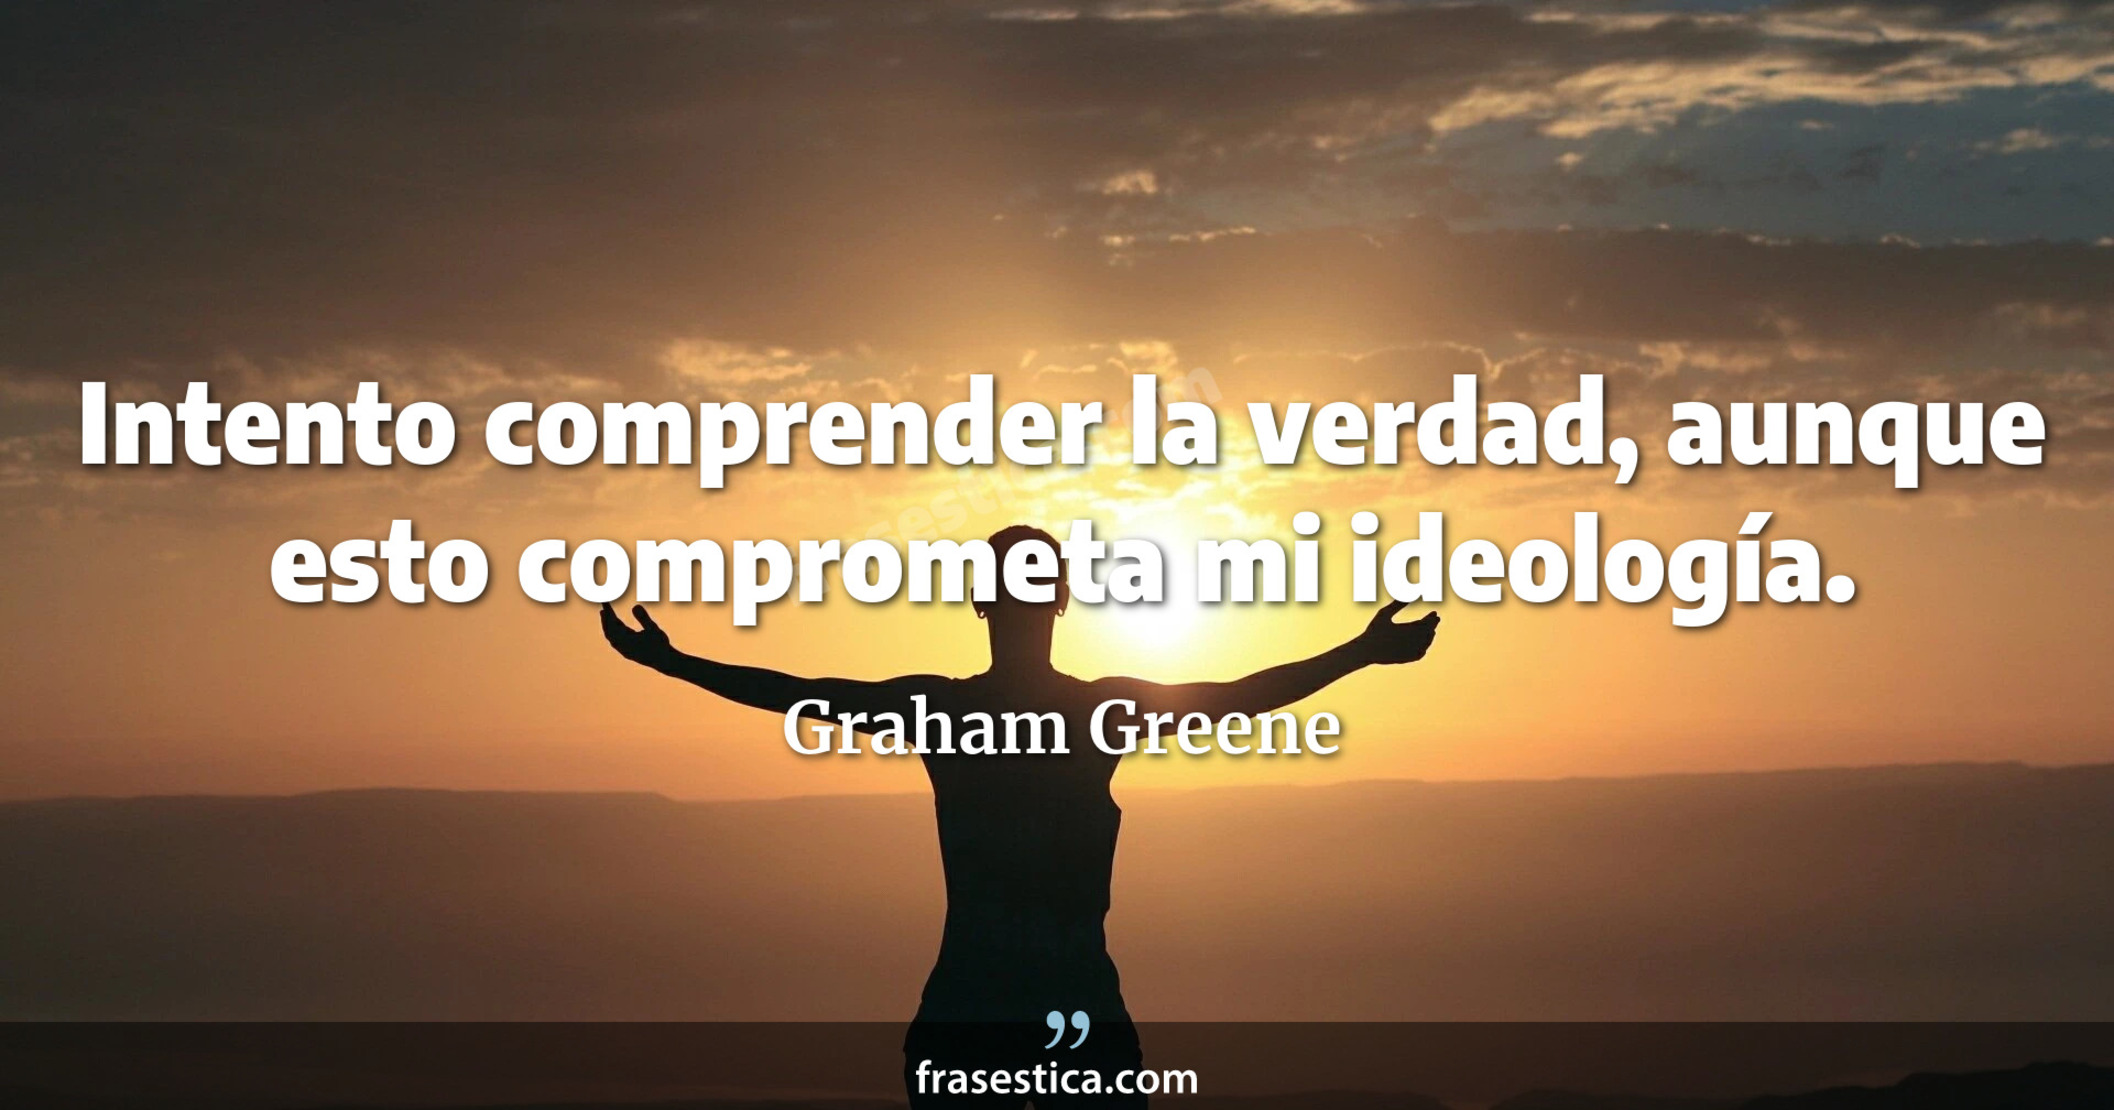 Intento comprender la verdad, aunque esto comprometa mi ideología. - Graham Greene